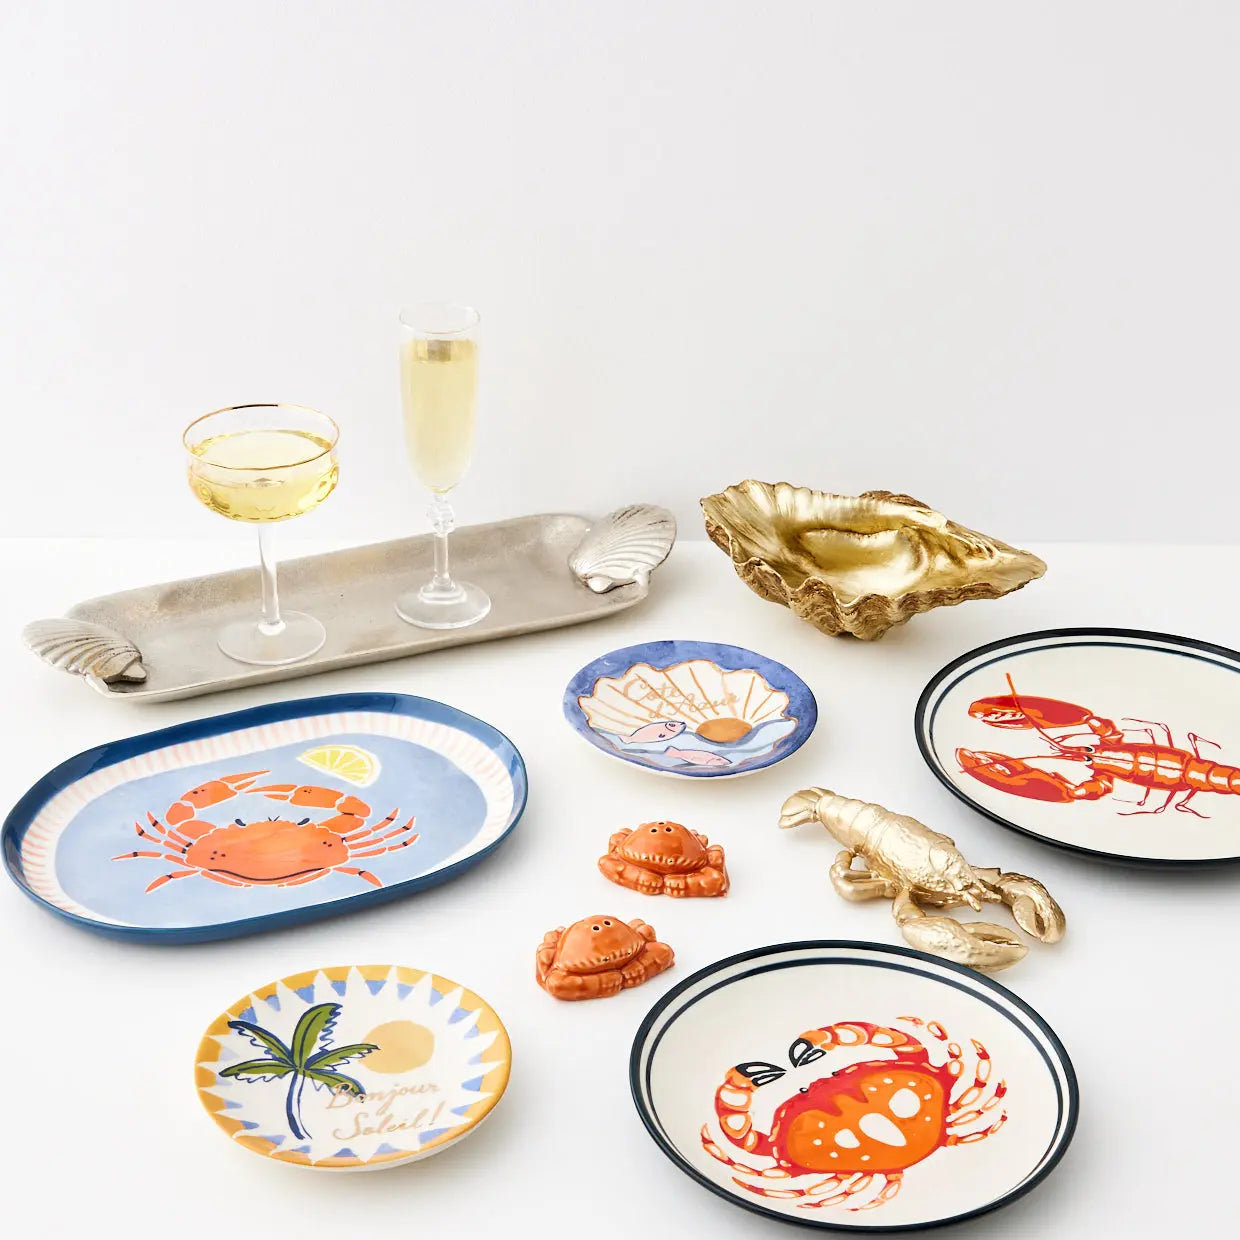 Crab Ceramic Side Plate - GigiandTom